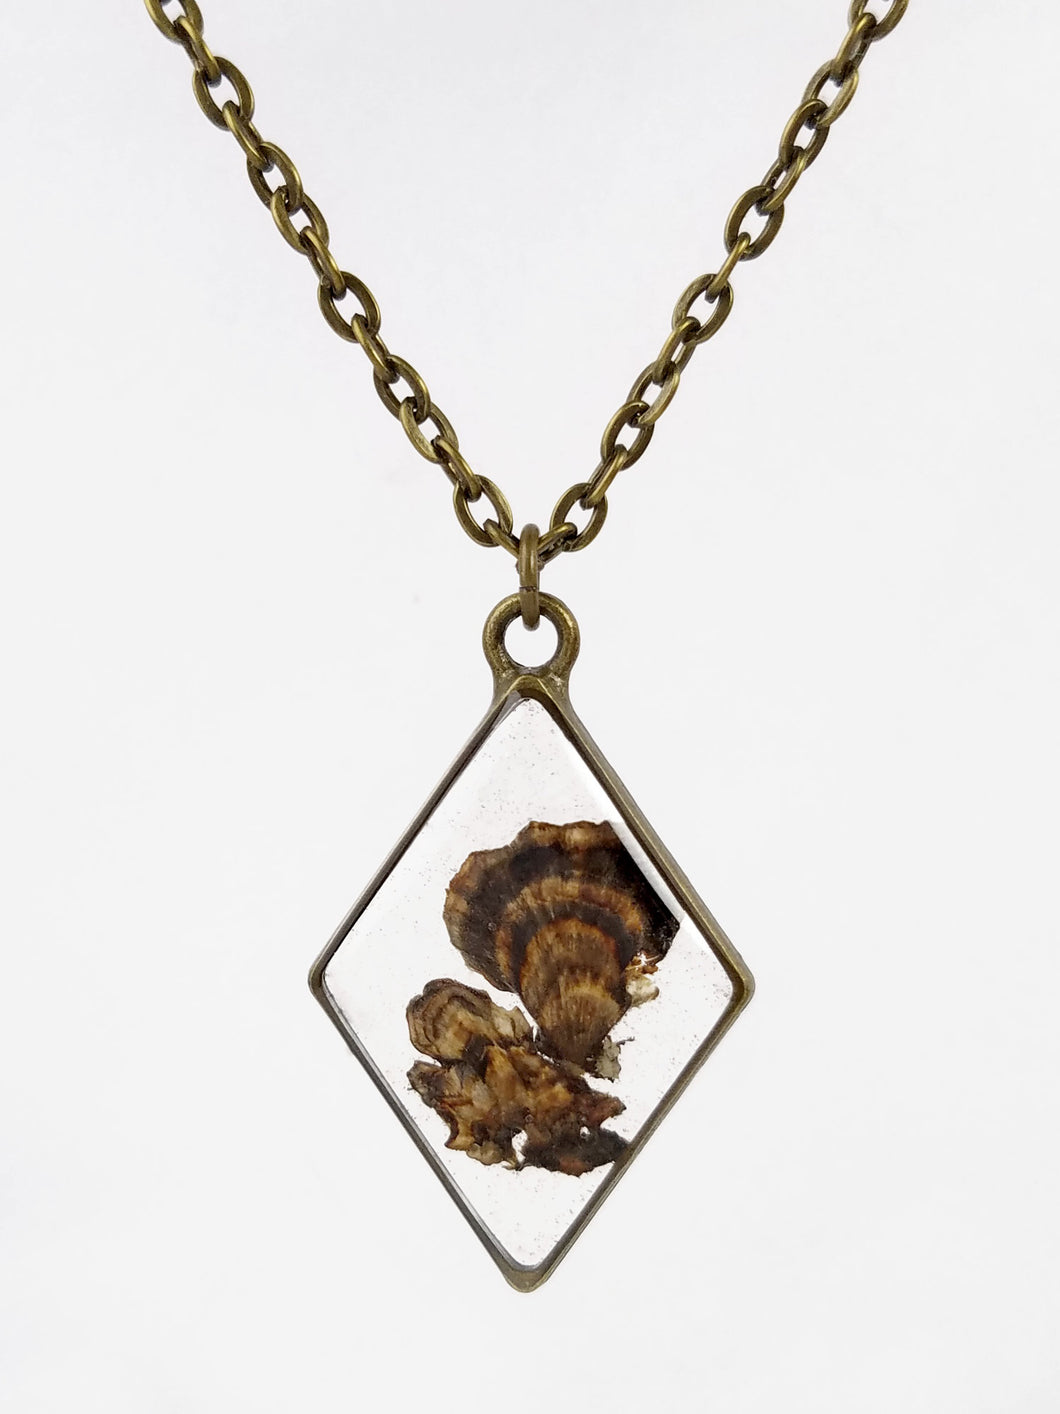 Turkey Tail Mushroom Diamond Bronze Pendant Necklace